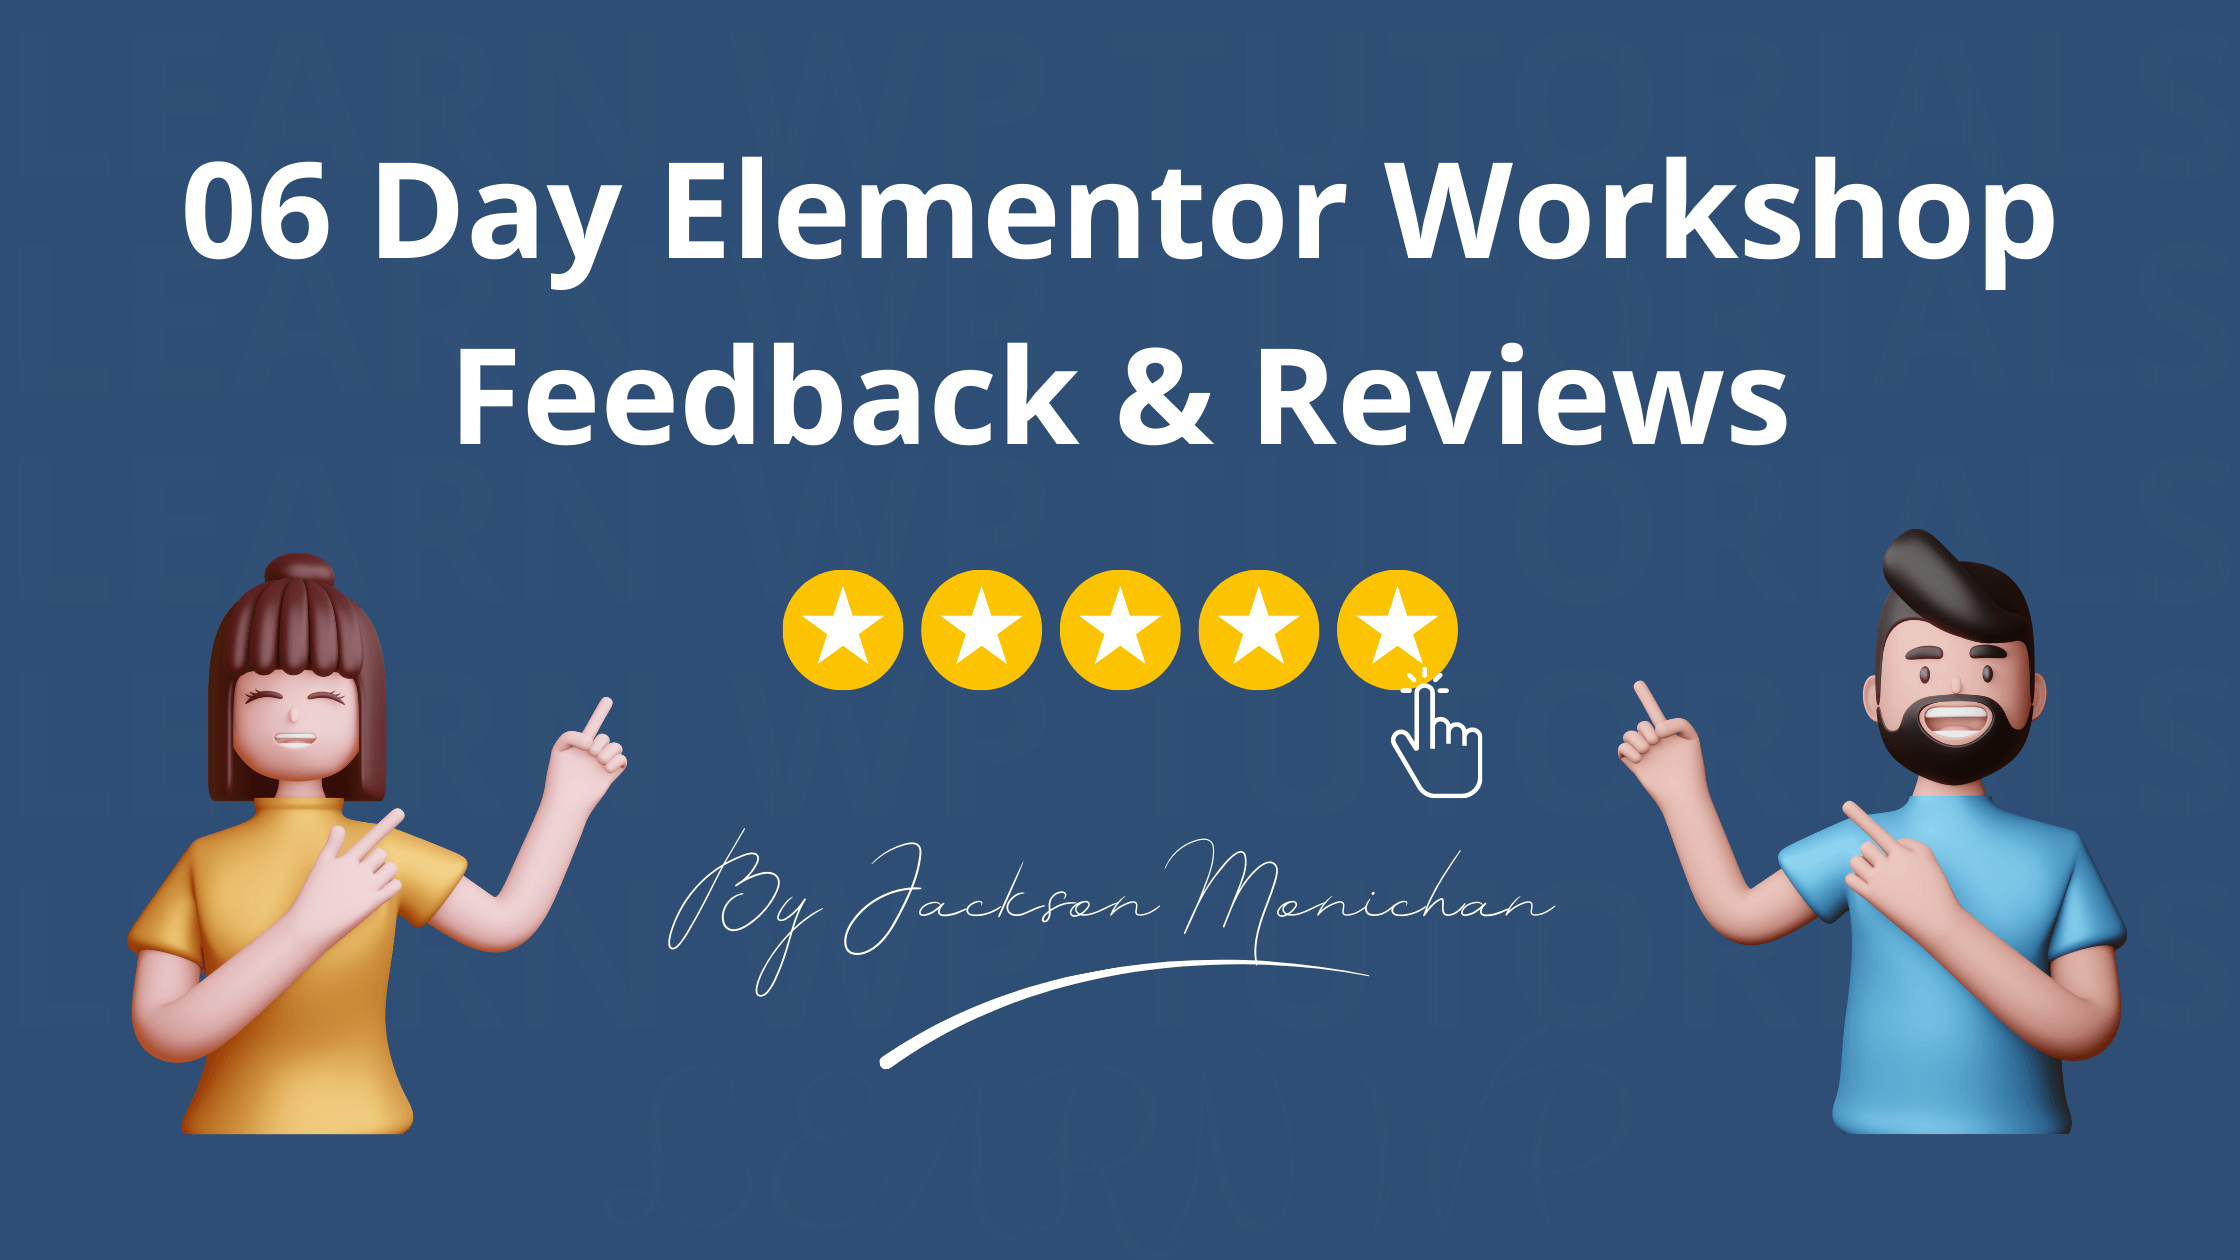 Elementor Workshop Feedback & Reviews